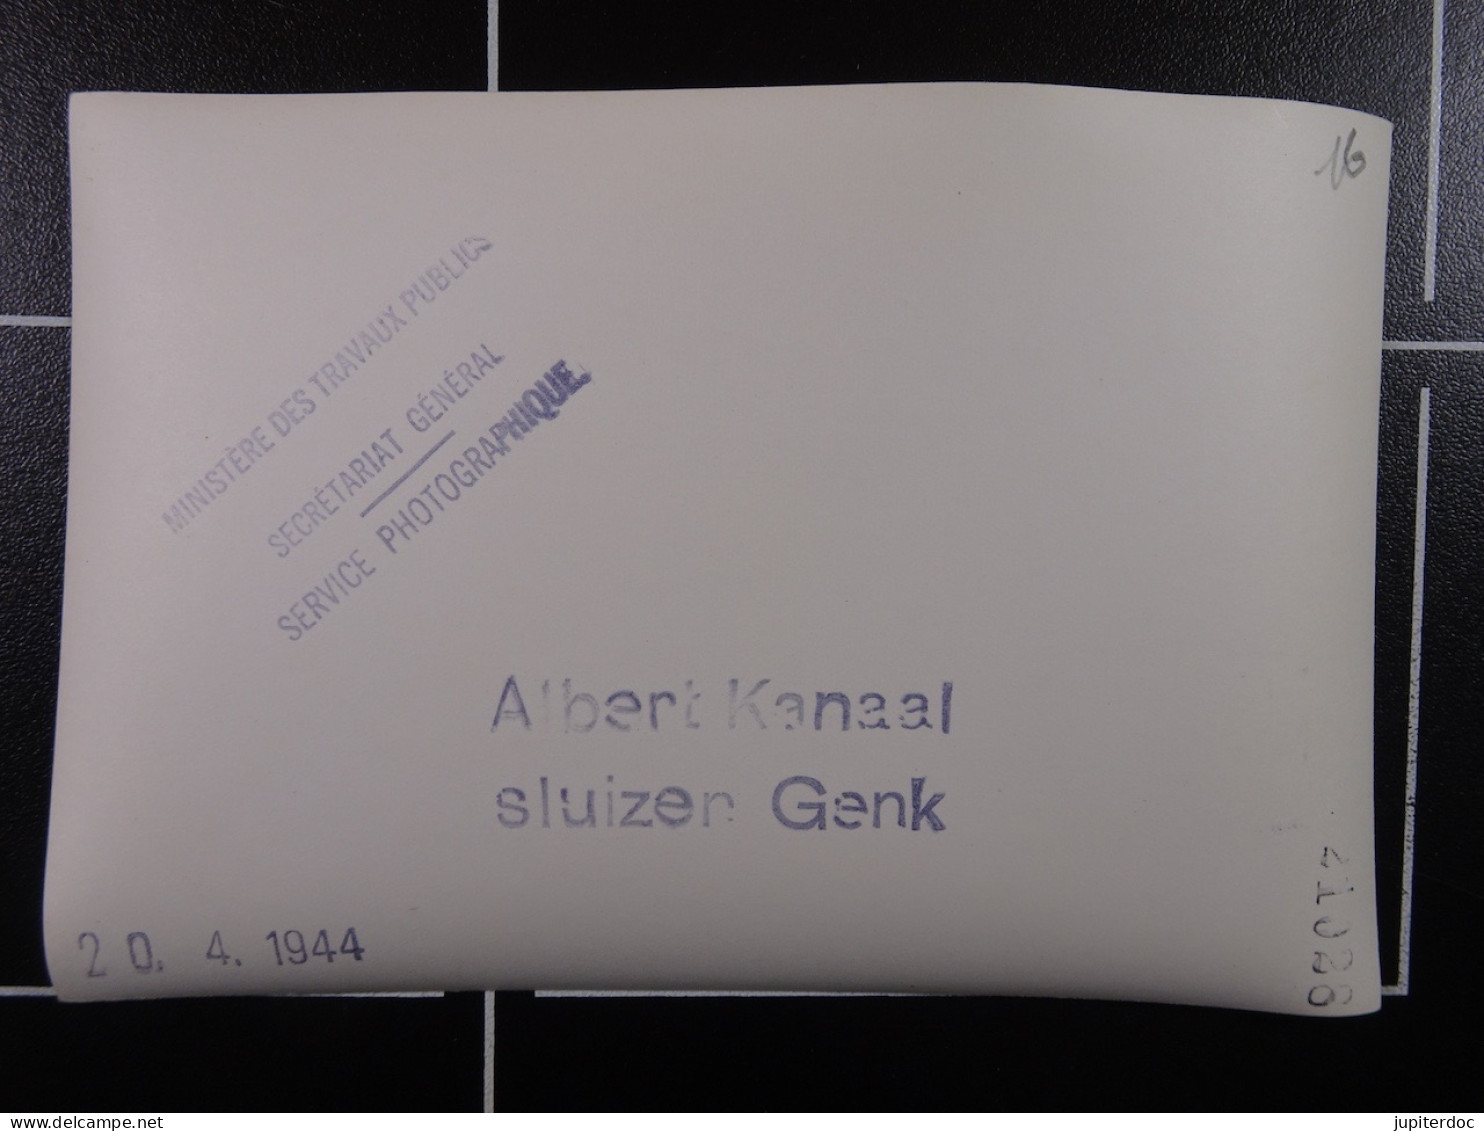 Min.Trav.Pub. Albert Kanaal Sluizen Genk 20-04-1944  /16/ - Diplomas Y Calificaciones Escolares